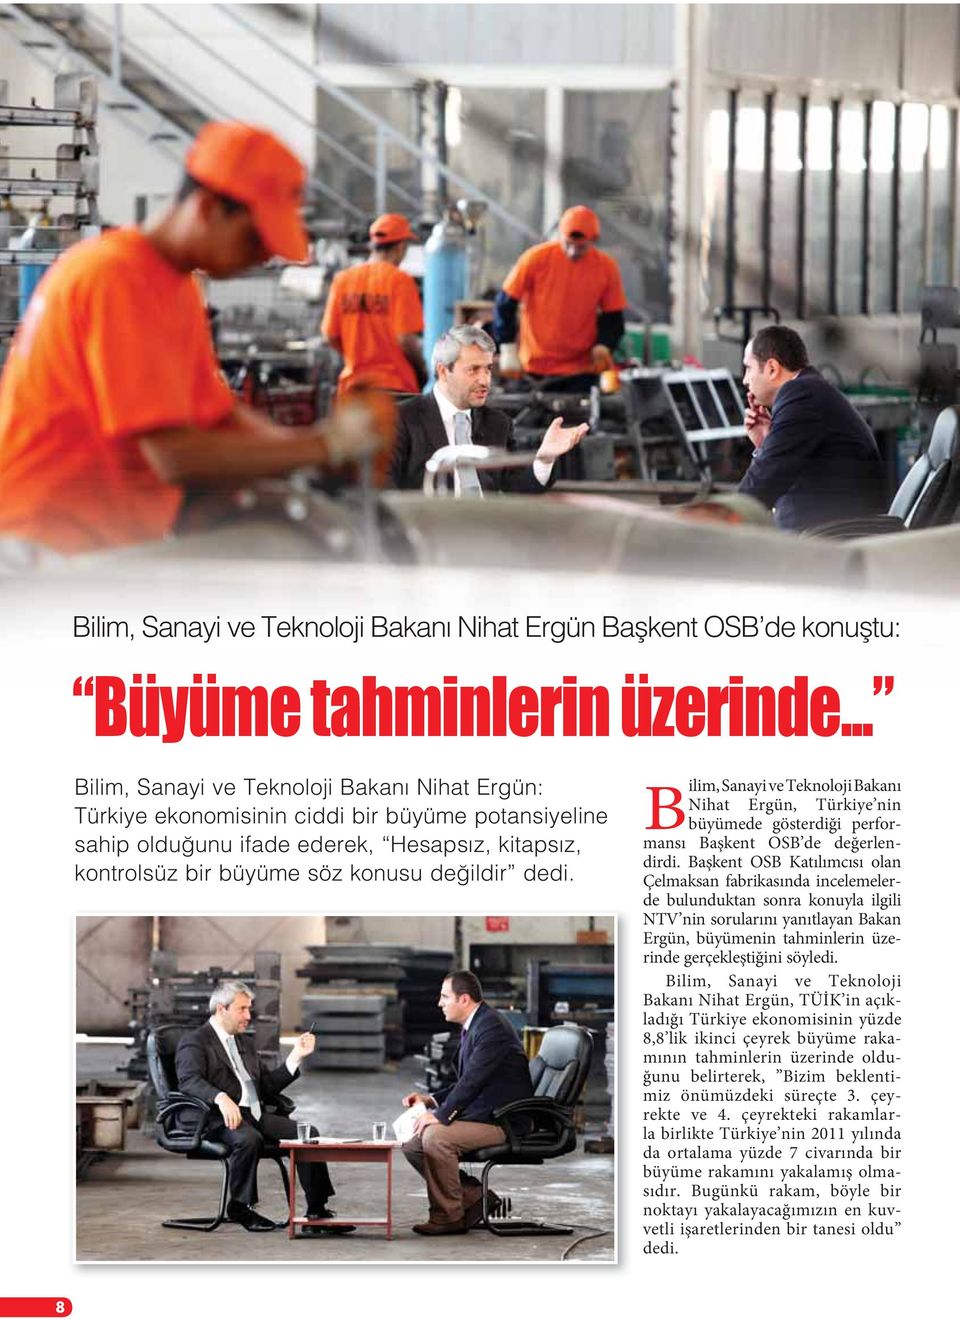 Başkent OSB Katılımcısı olan Çelmaksan fabrikasında incelemelerde bulunduktan sonra konuyla ilgili NTV nin sorularını yanıtlayan Bakan Ergün, büyümenin tahminlerin üzerinde gerçekleştiğini söyledi.